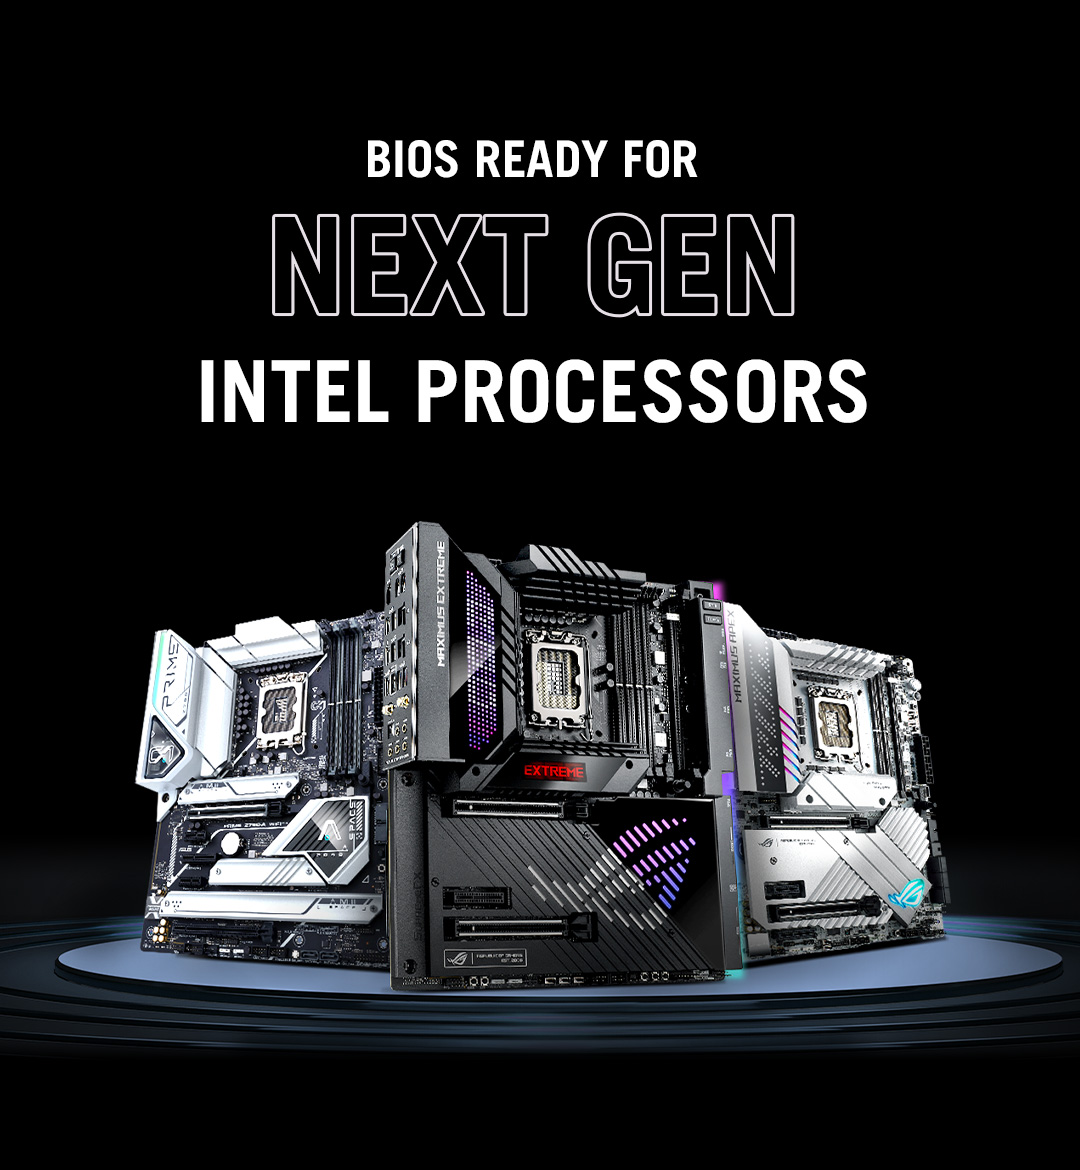 Afbeelding drie Z790-moederborden met BIOS Ready voor next-gen Intel processors